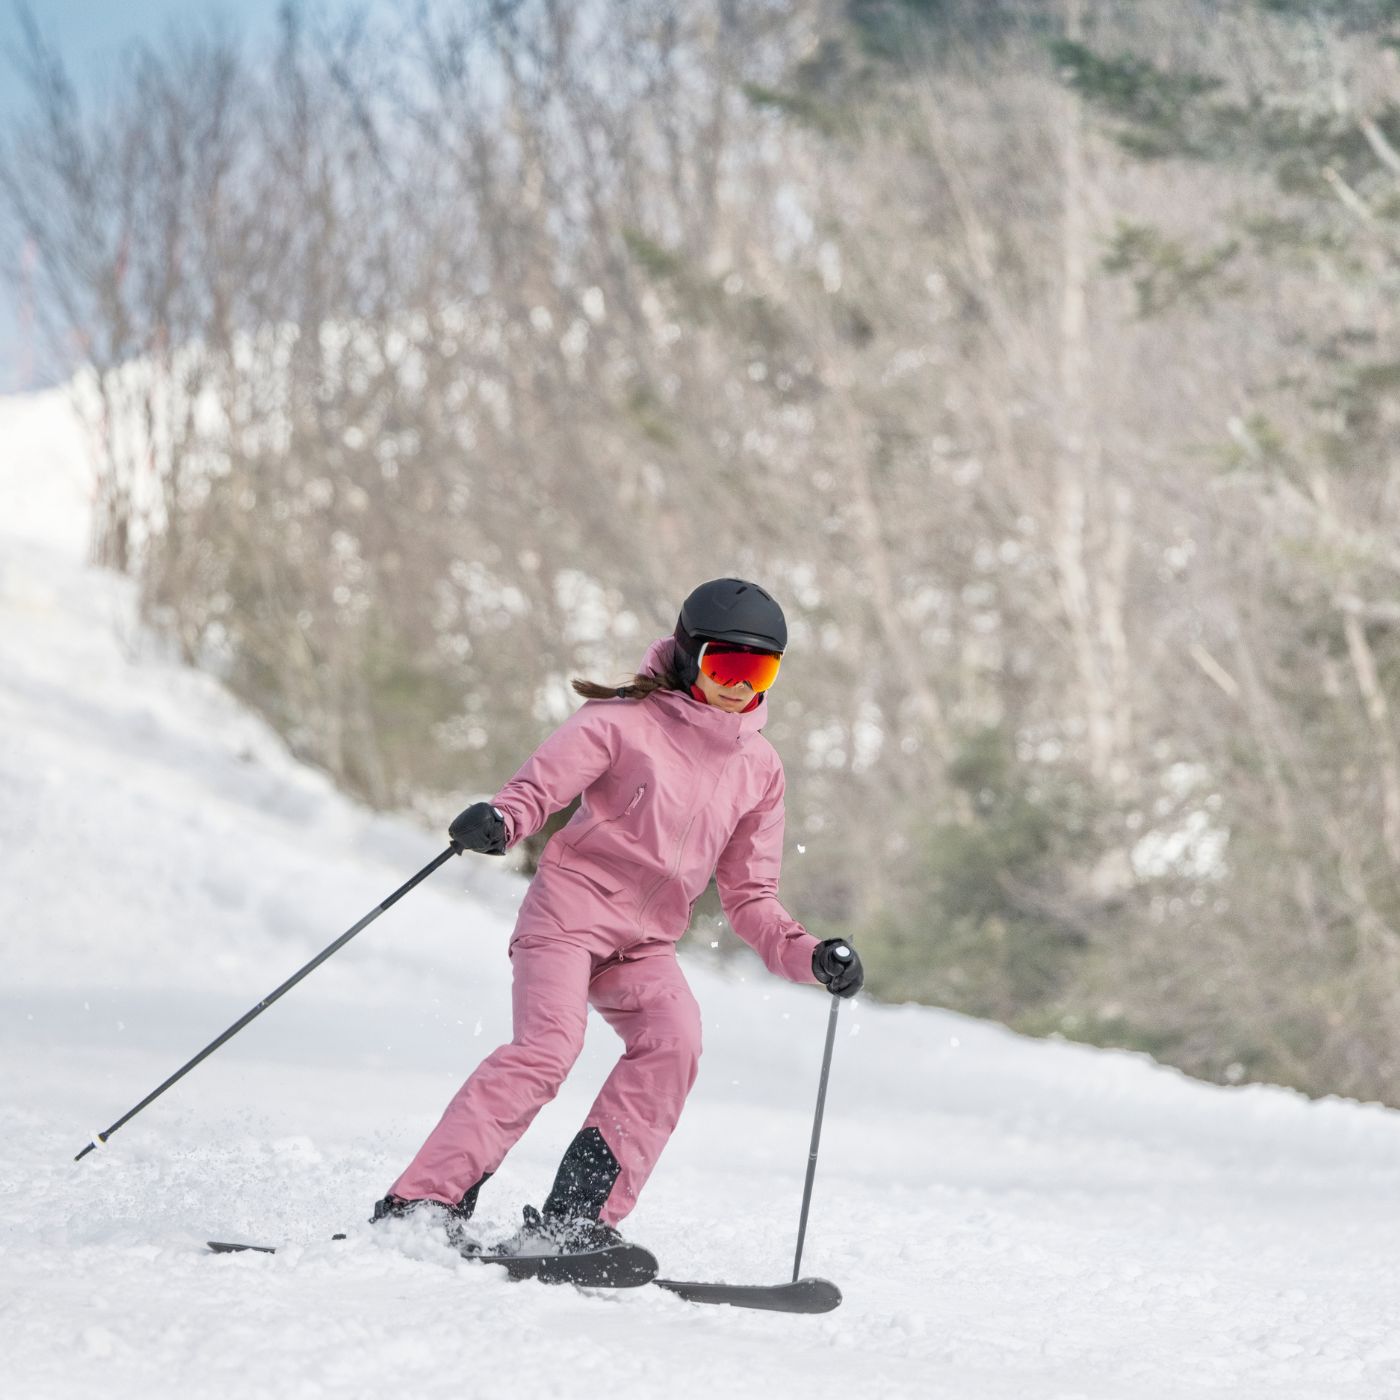 skiing, resort,women, short skis, skiskates, skiboards, skiblades, snowfeet, mountains, winter, outdoor, sport, fun